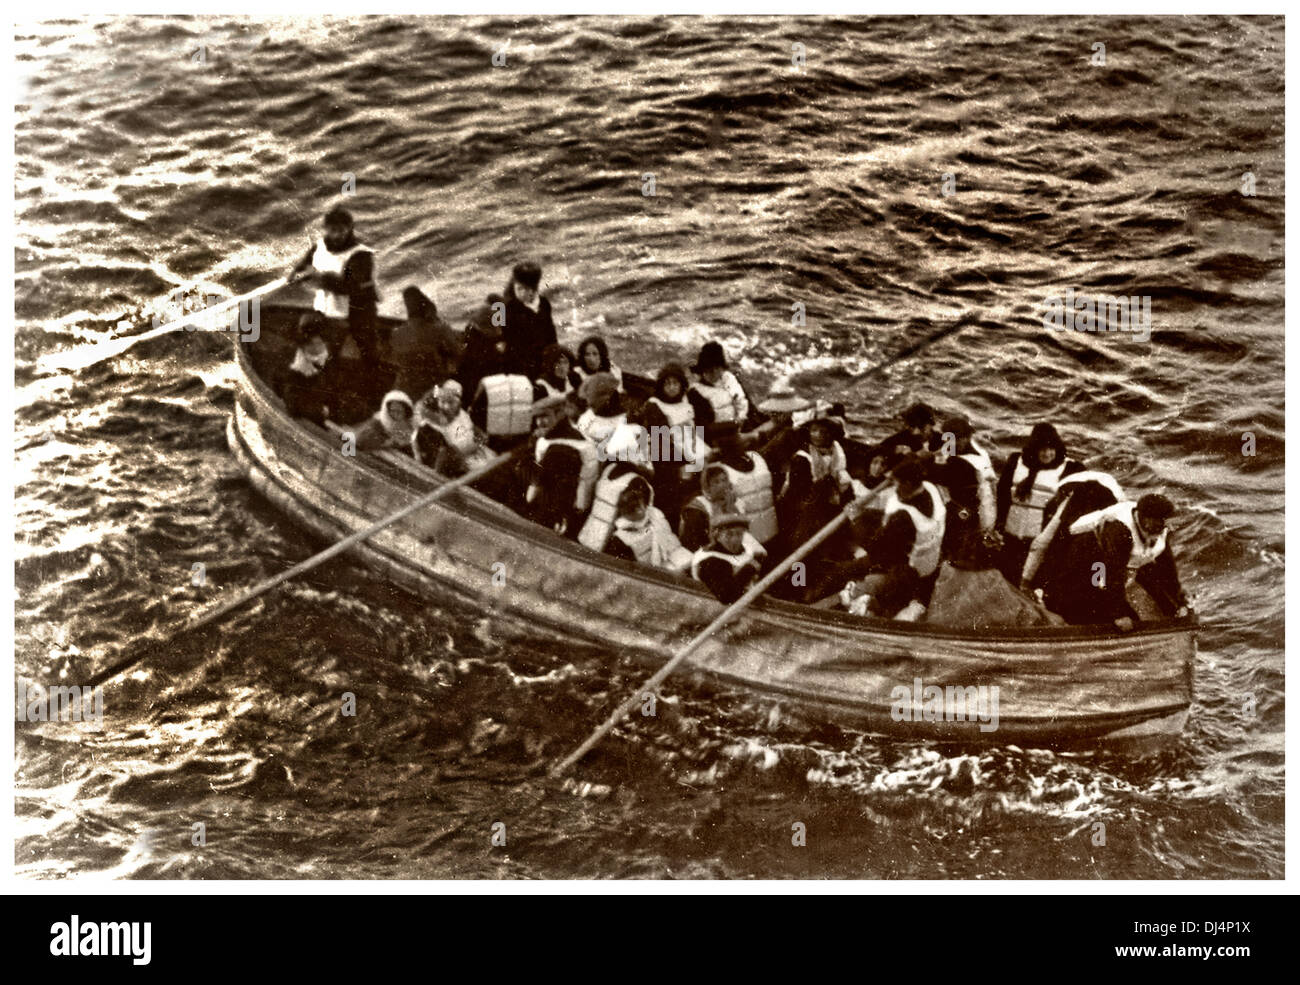 RETTUNGSBOOT DER TITANIC ÜBERLEBENDE Teilweise mit eiskaltem Meerwasser überflutet, nähert sich das kollapsible Boot D der Titanic am 15. April 1912 um 7:15 Uhr RMS Carpathia. Stockfoto